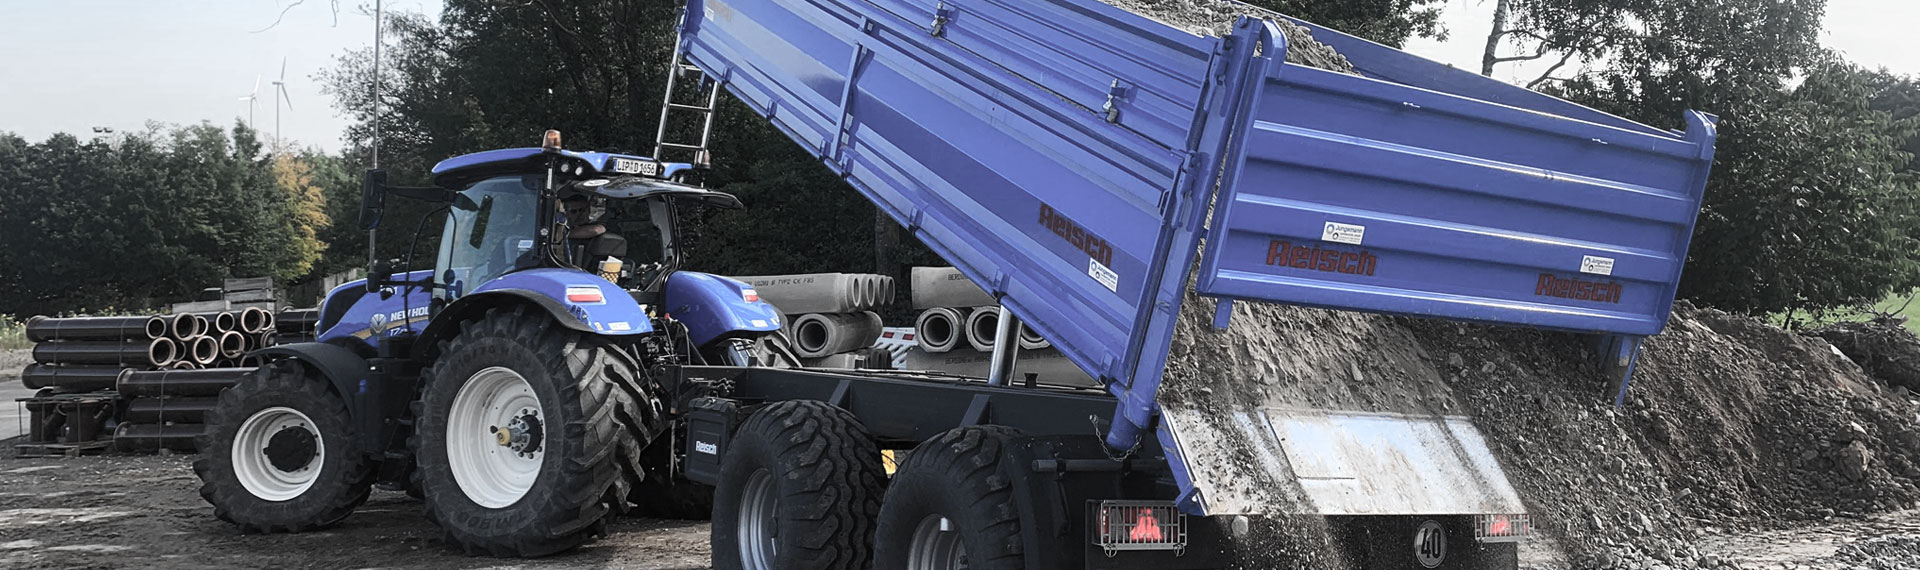 Hardox® 박판 제품으로 제작된 파란색 덤프 트럭 적재함에서 적재된 암석들을 쏟아 내고 있습니다.